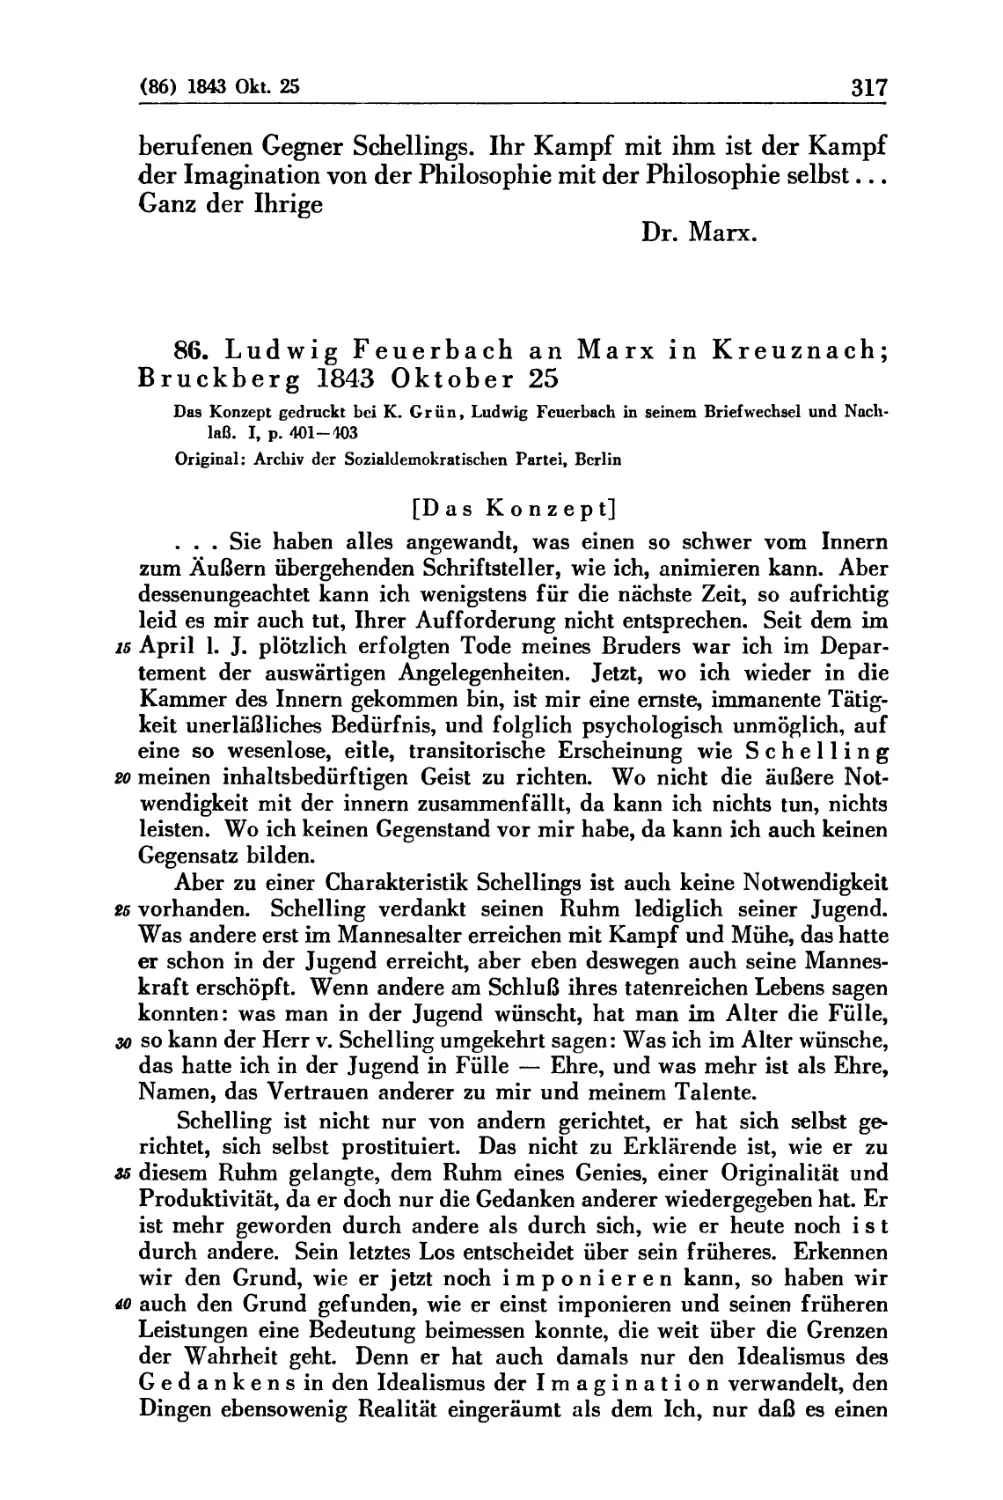 86. Ludwig Feuerbach an Marx in Kreuznach; Bruckberg 1843 Oktober 25